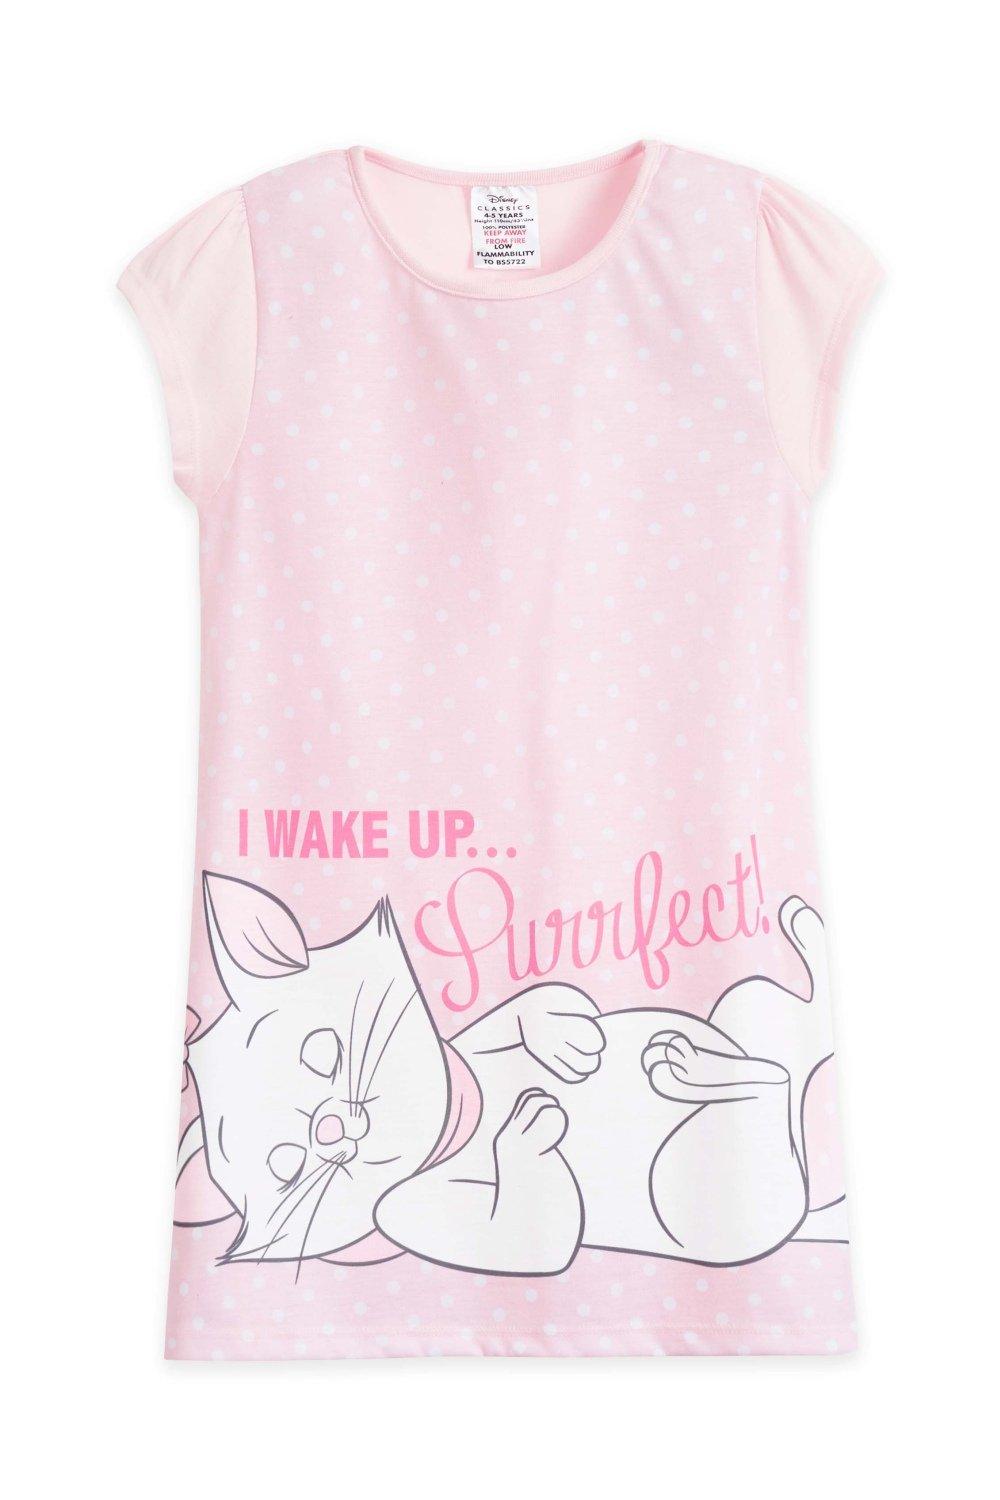 Ночная рубашка Marie с коротким рукавом Disney, розовый ночная рубашка с коротким рукавом hey duggee розовый